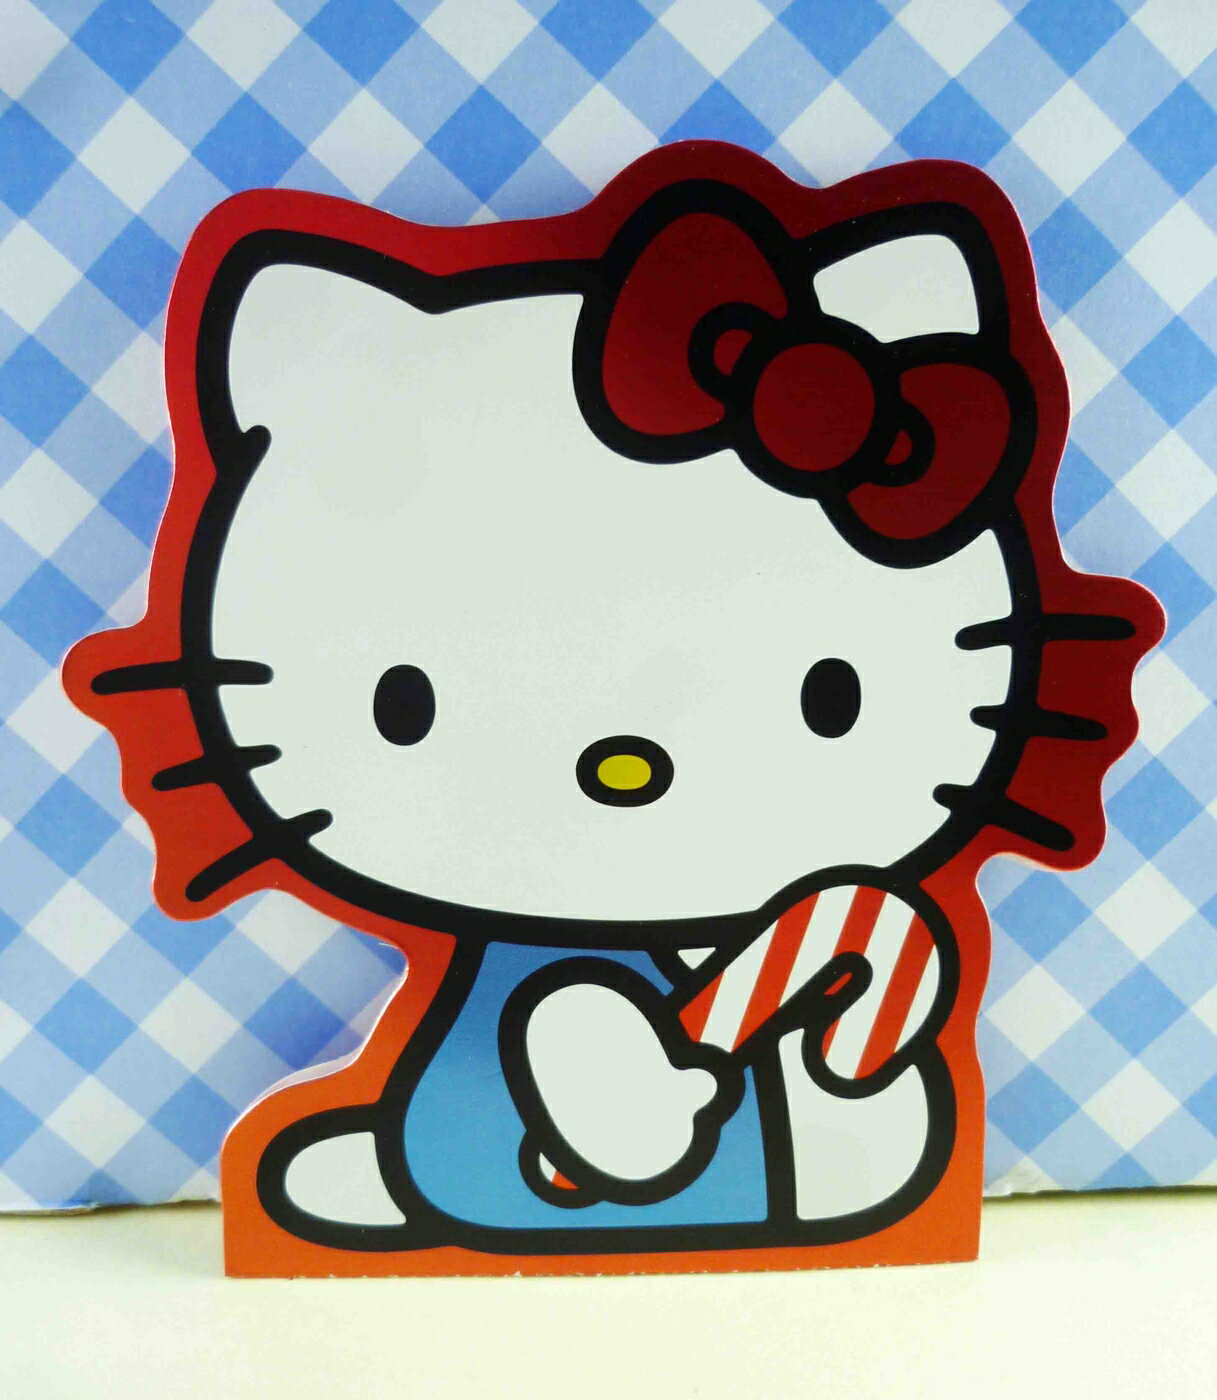 【震撼精品百貨】Hello Kitty 凱蒂貓 KITTY貼紙-附造型卡 震撼日式精品百貨